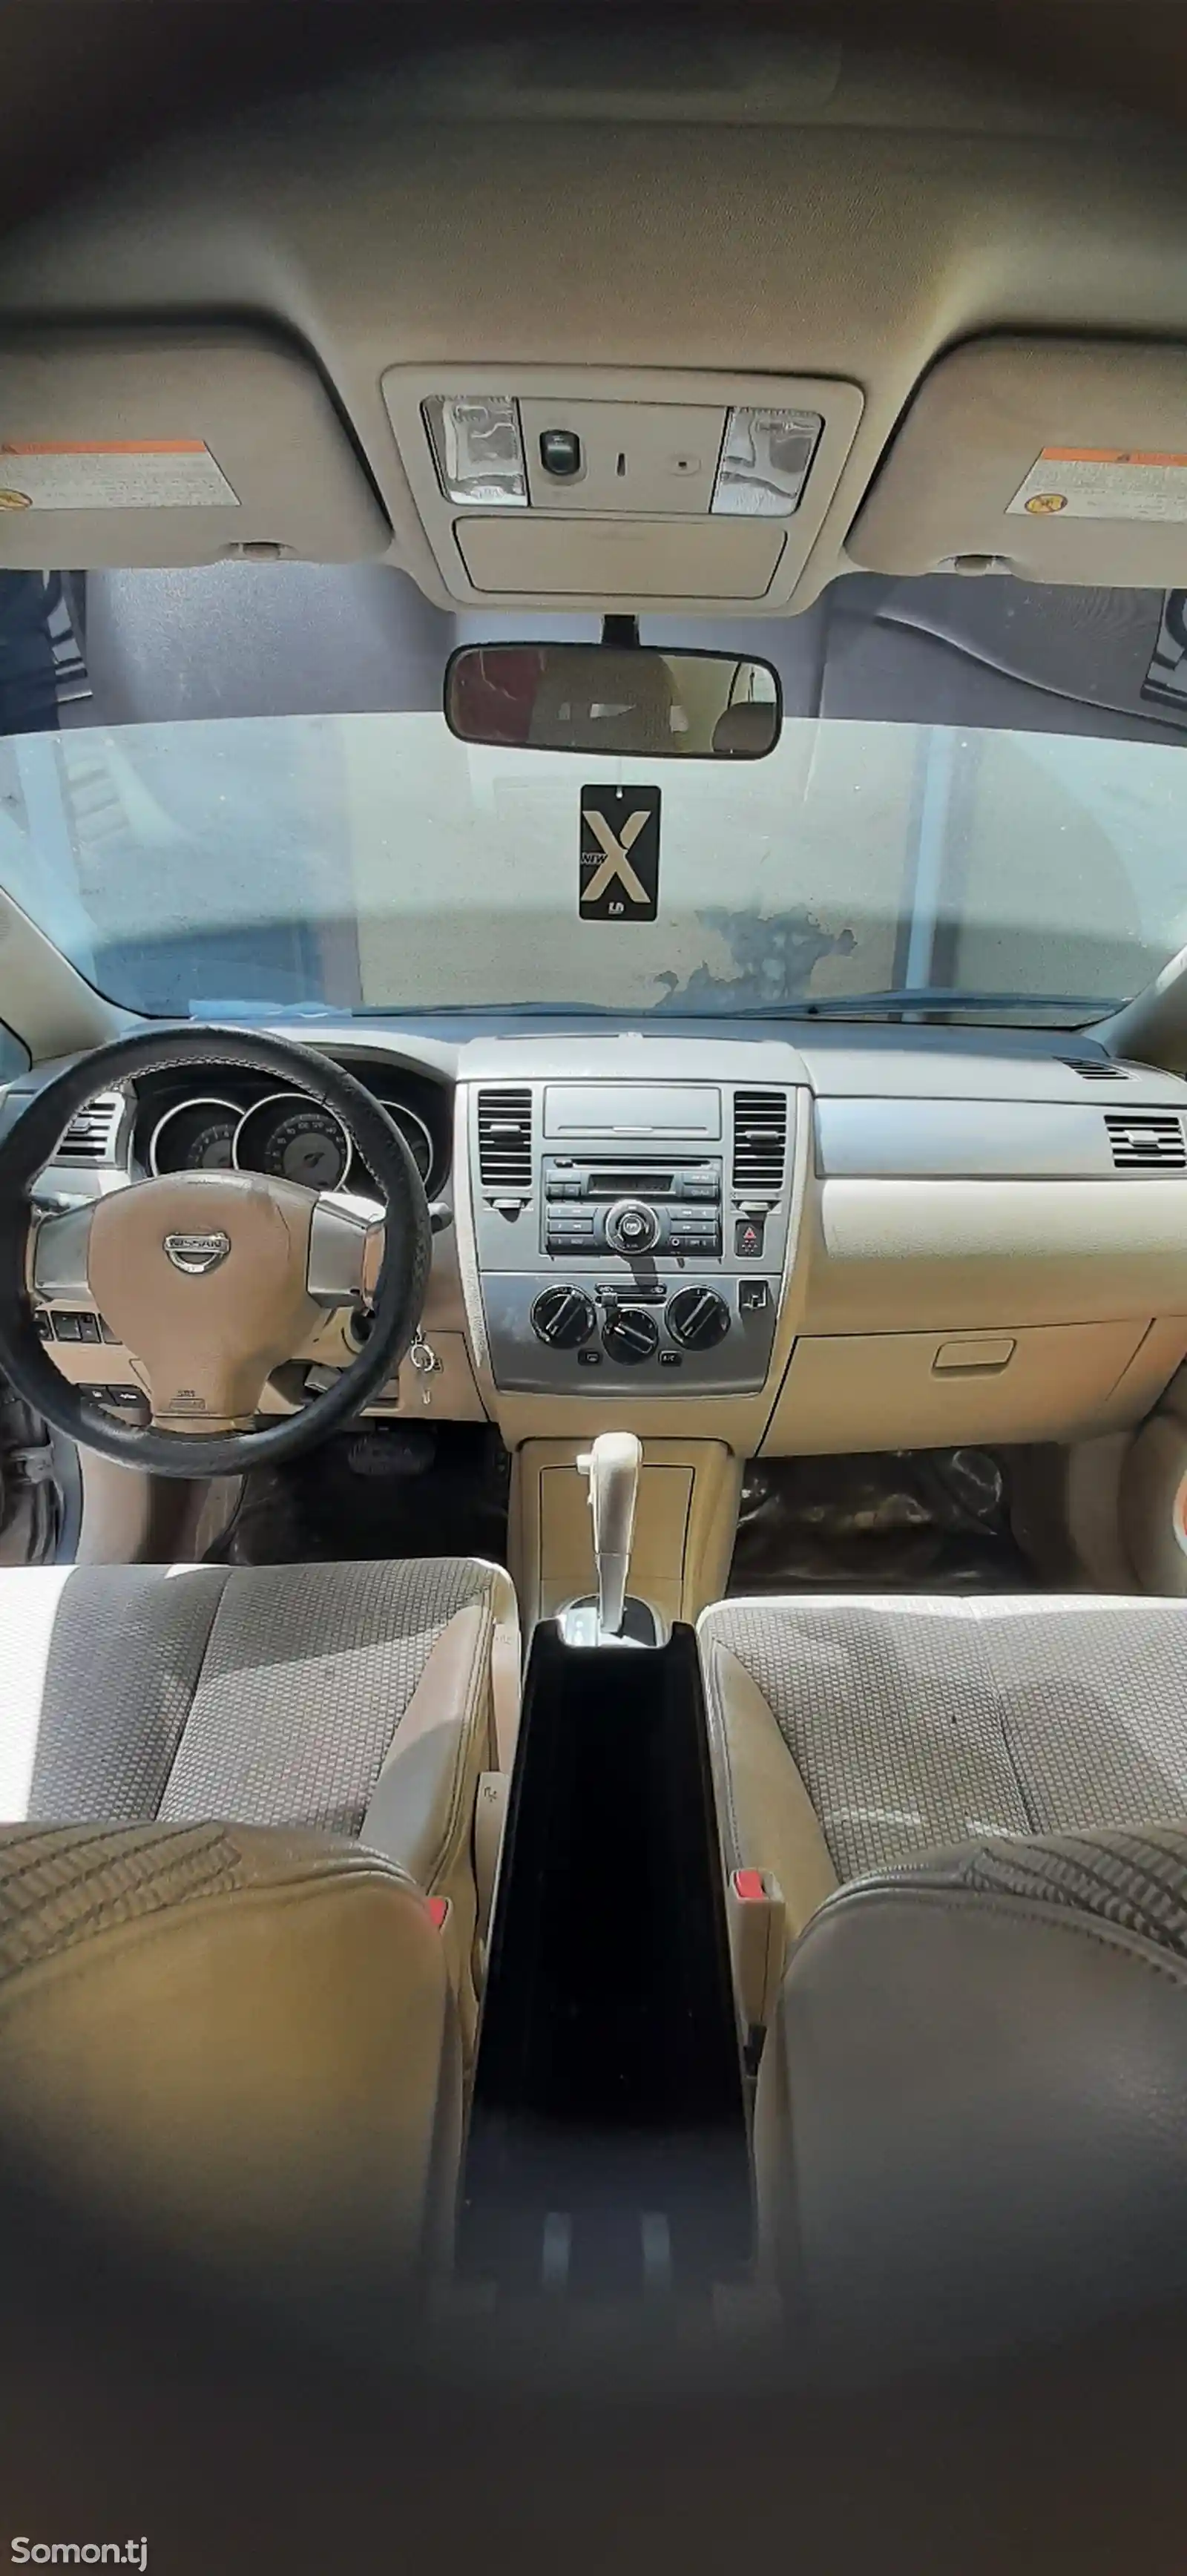 Nissan Tiida, 2007-2